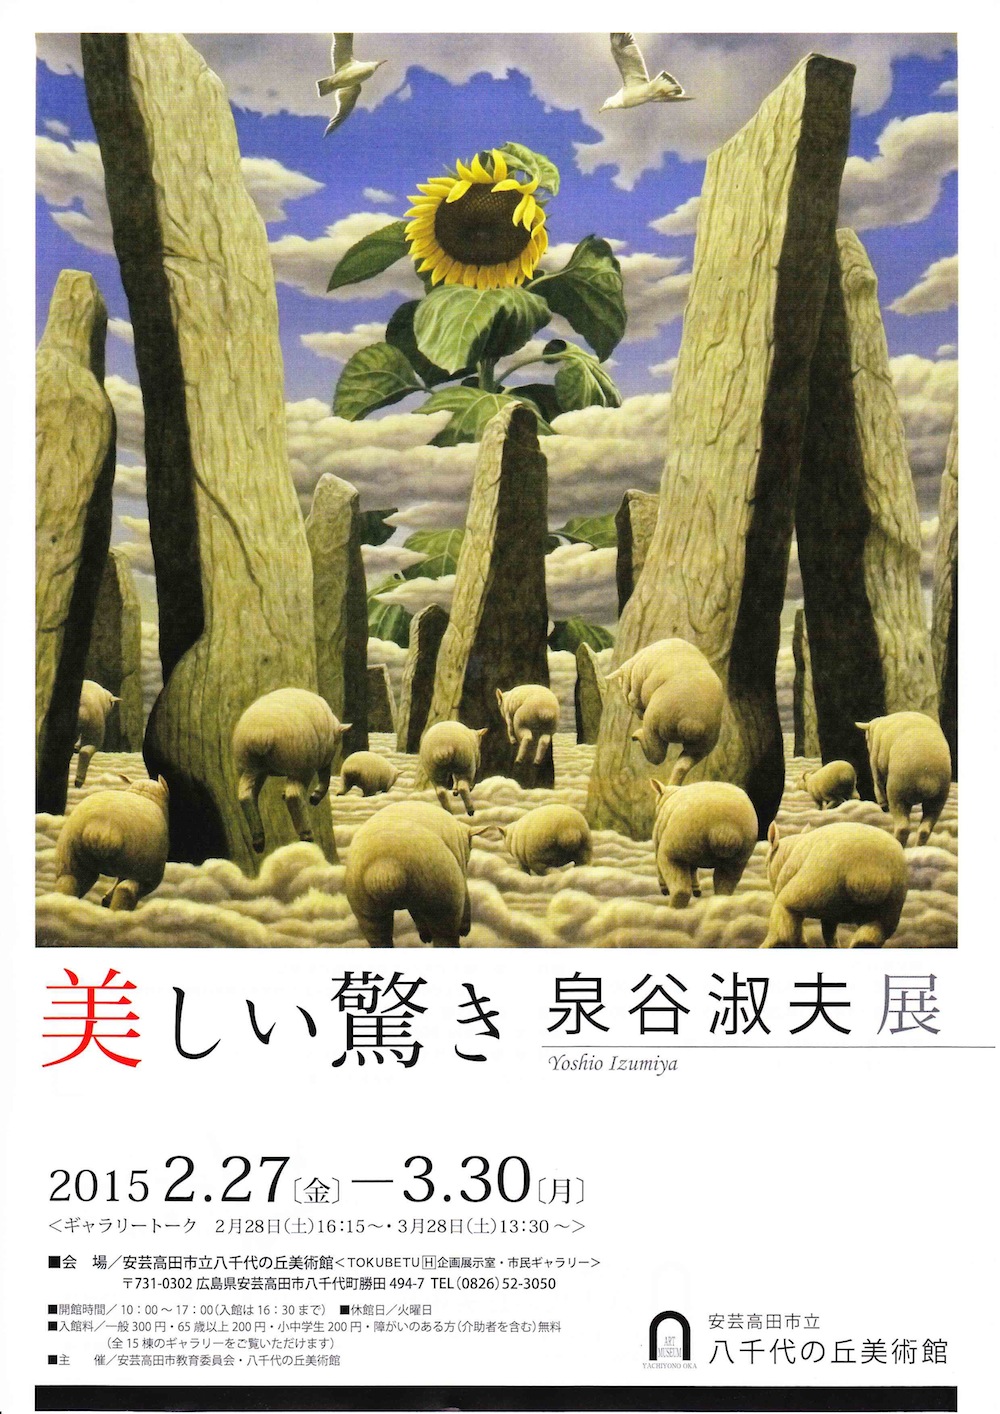 「美しい驚き 泉谷淑夫展 2014」2/27から開催。